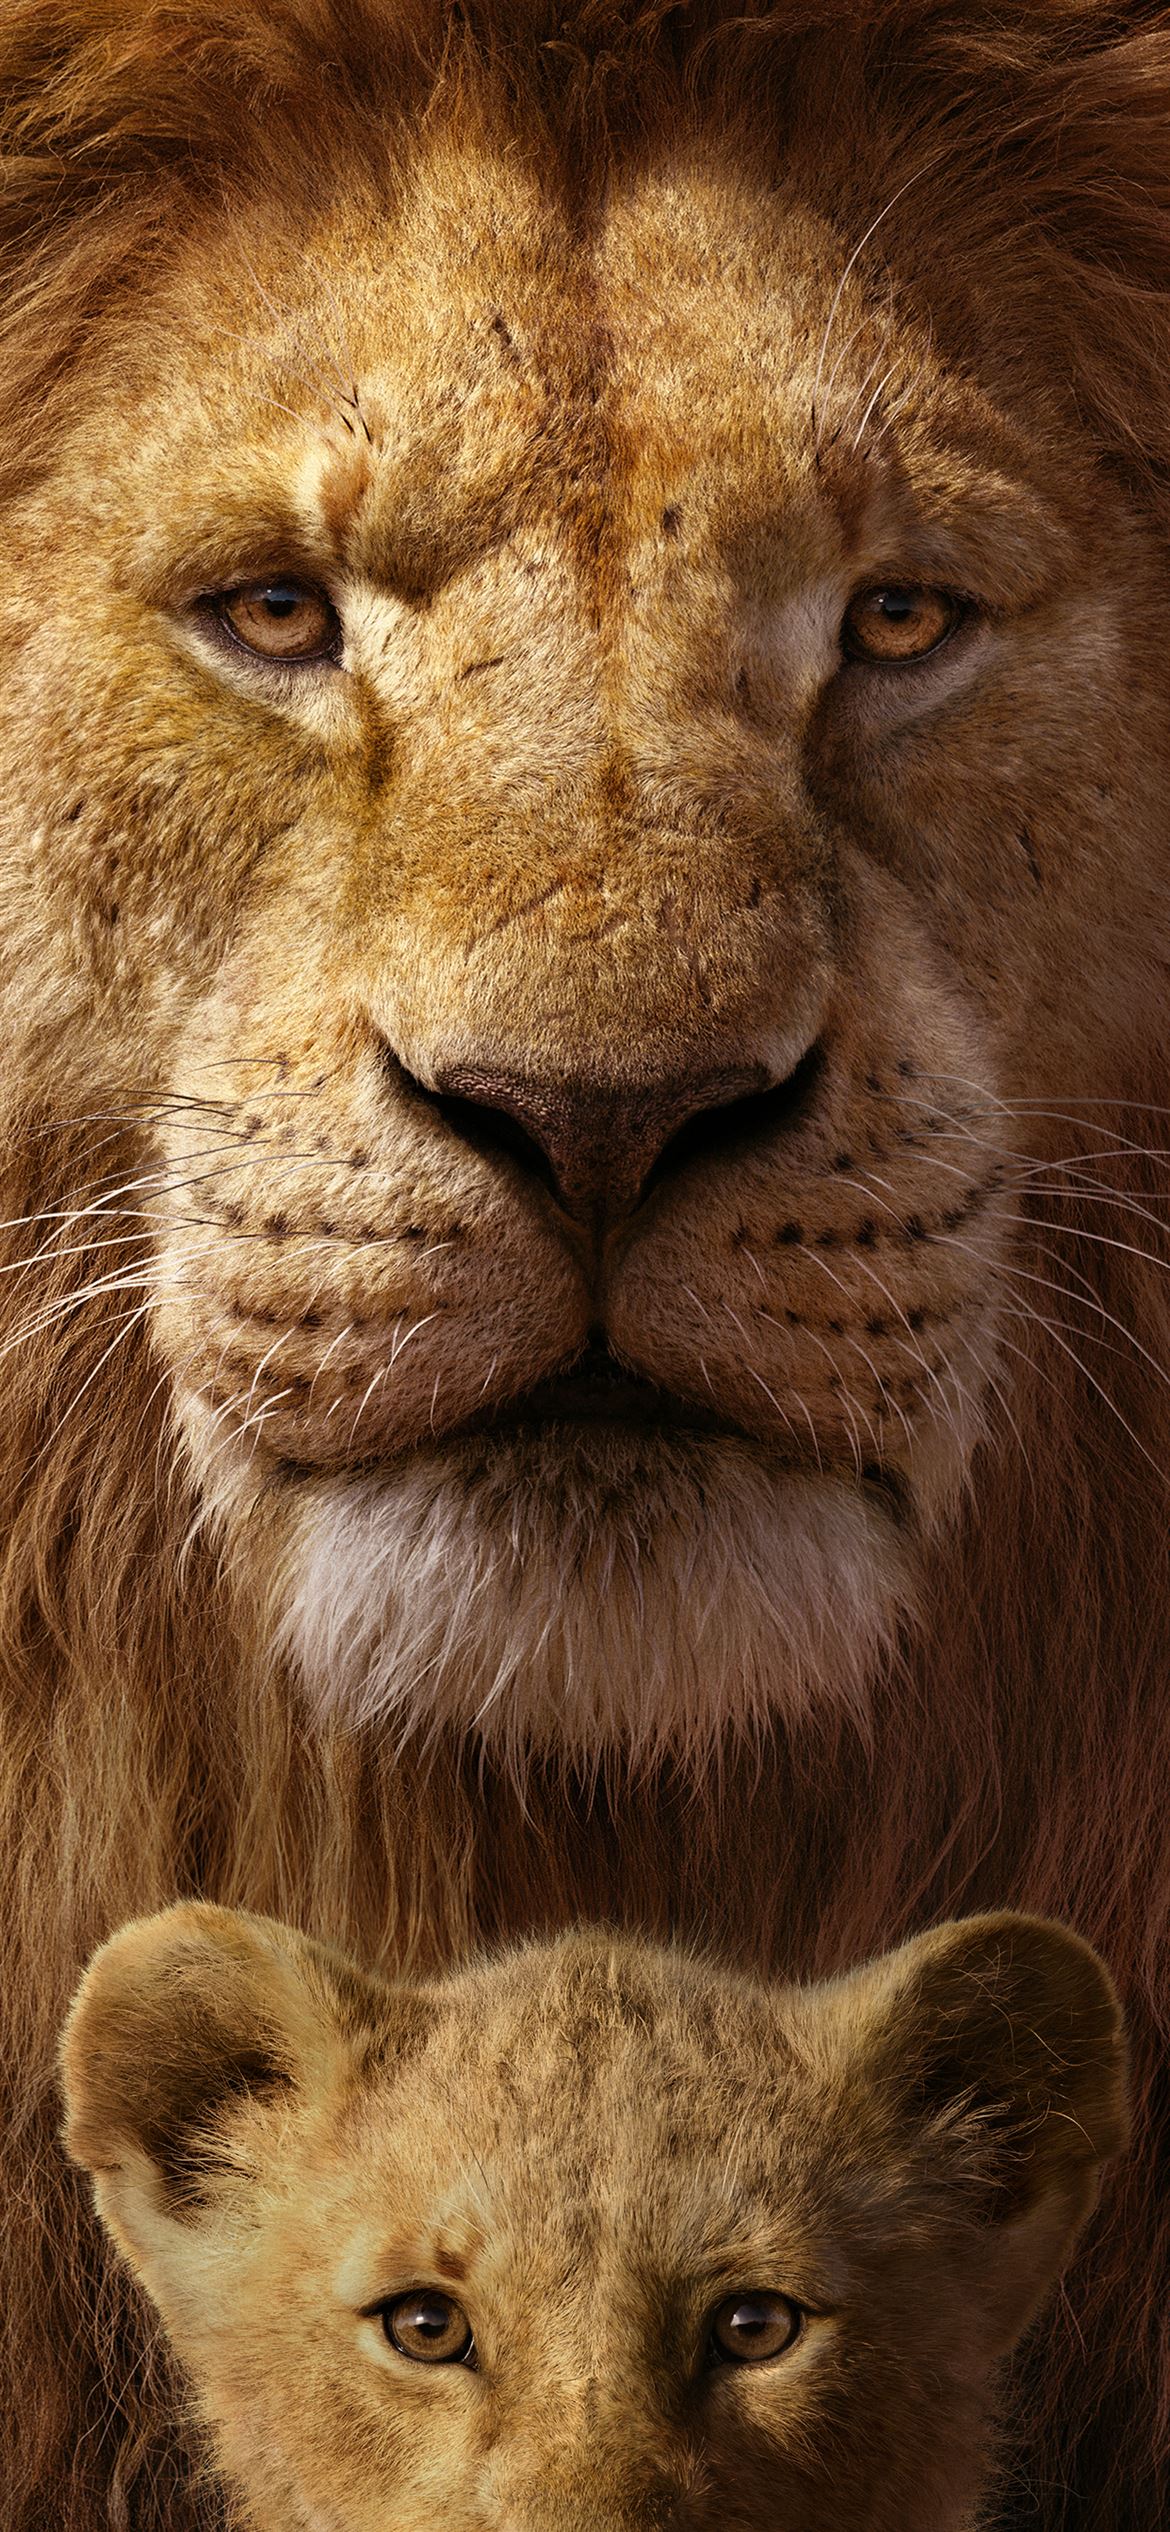 Nếu bạn là fan của bộ phim hoạt hình nổi tiếng Lion King, hình nền iPhone của bạn sẽ trở nên độc đáo hơn bao giờ hết với các bức tranh động vật quý hiếm này. Họ sẽ đưa bạn đến với cảm giác như đang sống trong vườn thú với các nhân vật yêu thích của bạn.